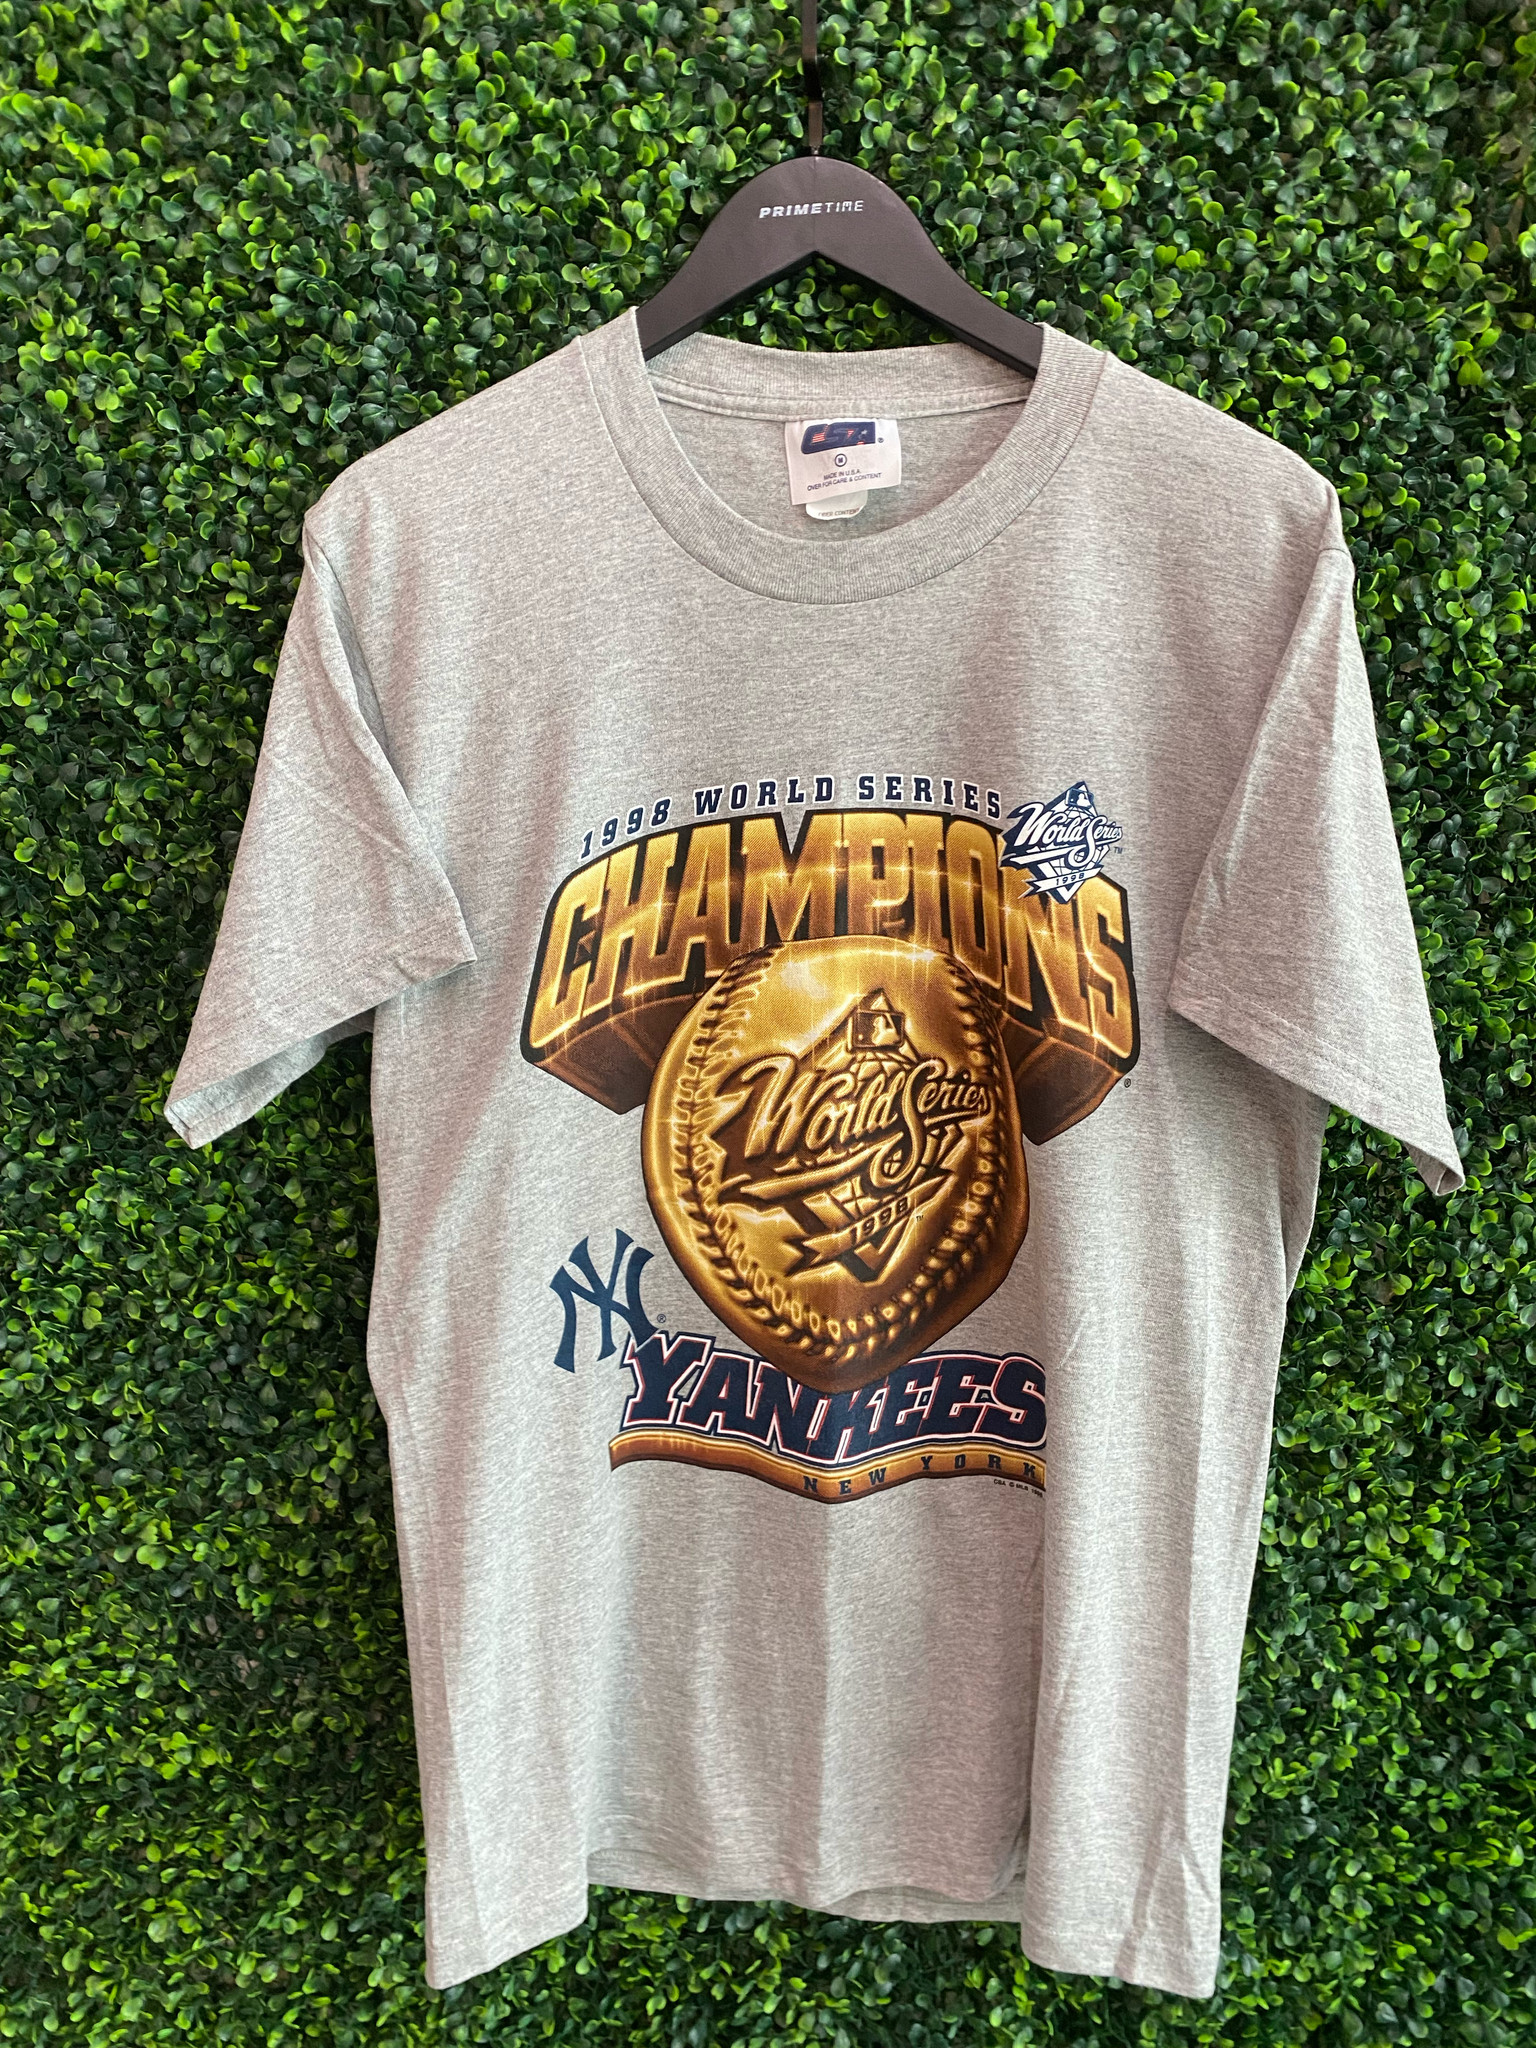 Vintage New York Yankees 1998 World Series Champions Shirt Oneita